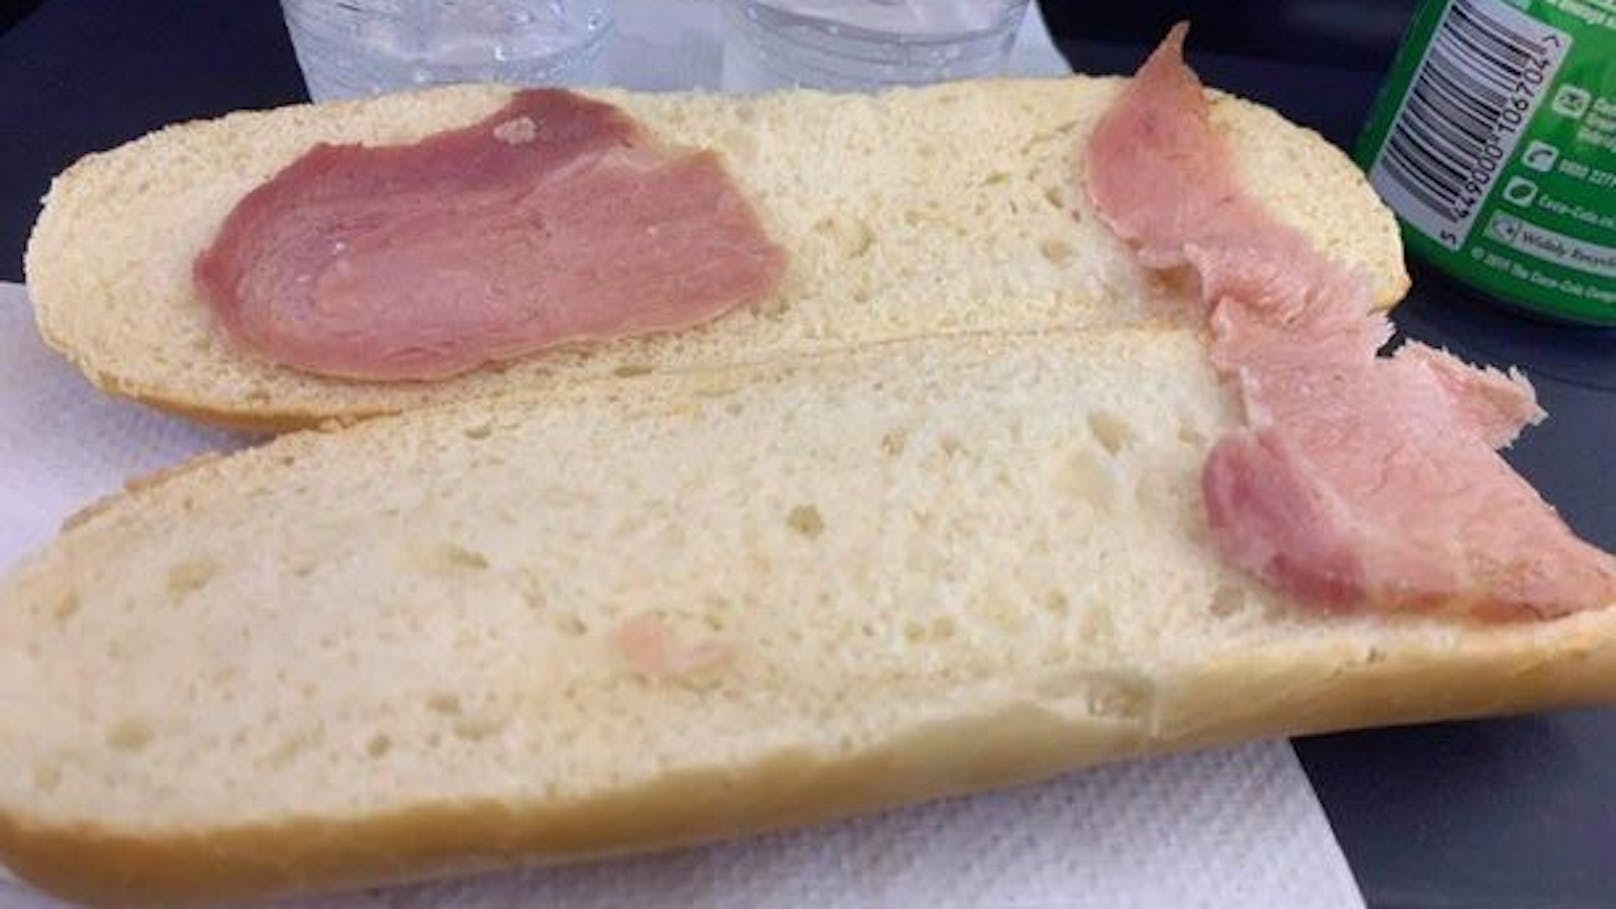 Das "traurigste Sandwich der Welt", kommentierte ein Twitter-User